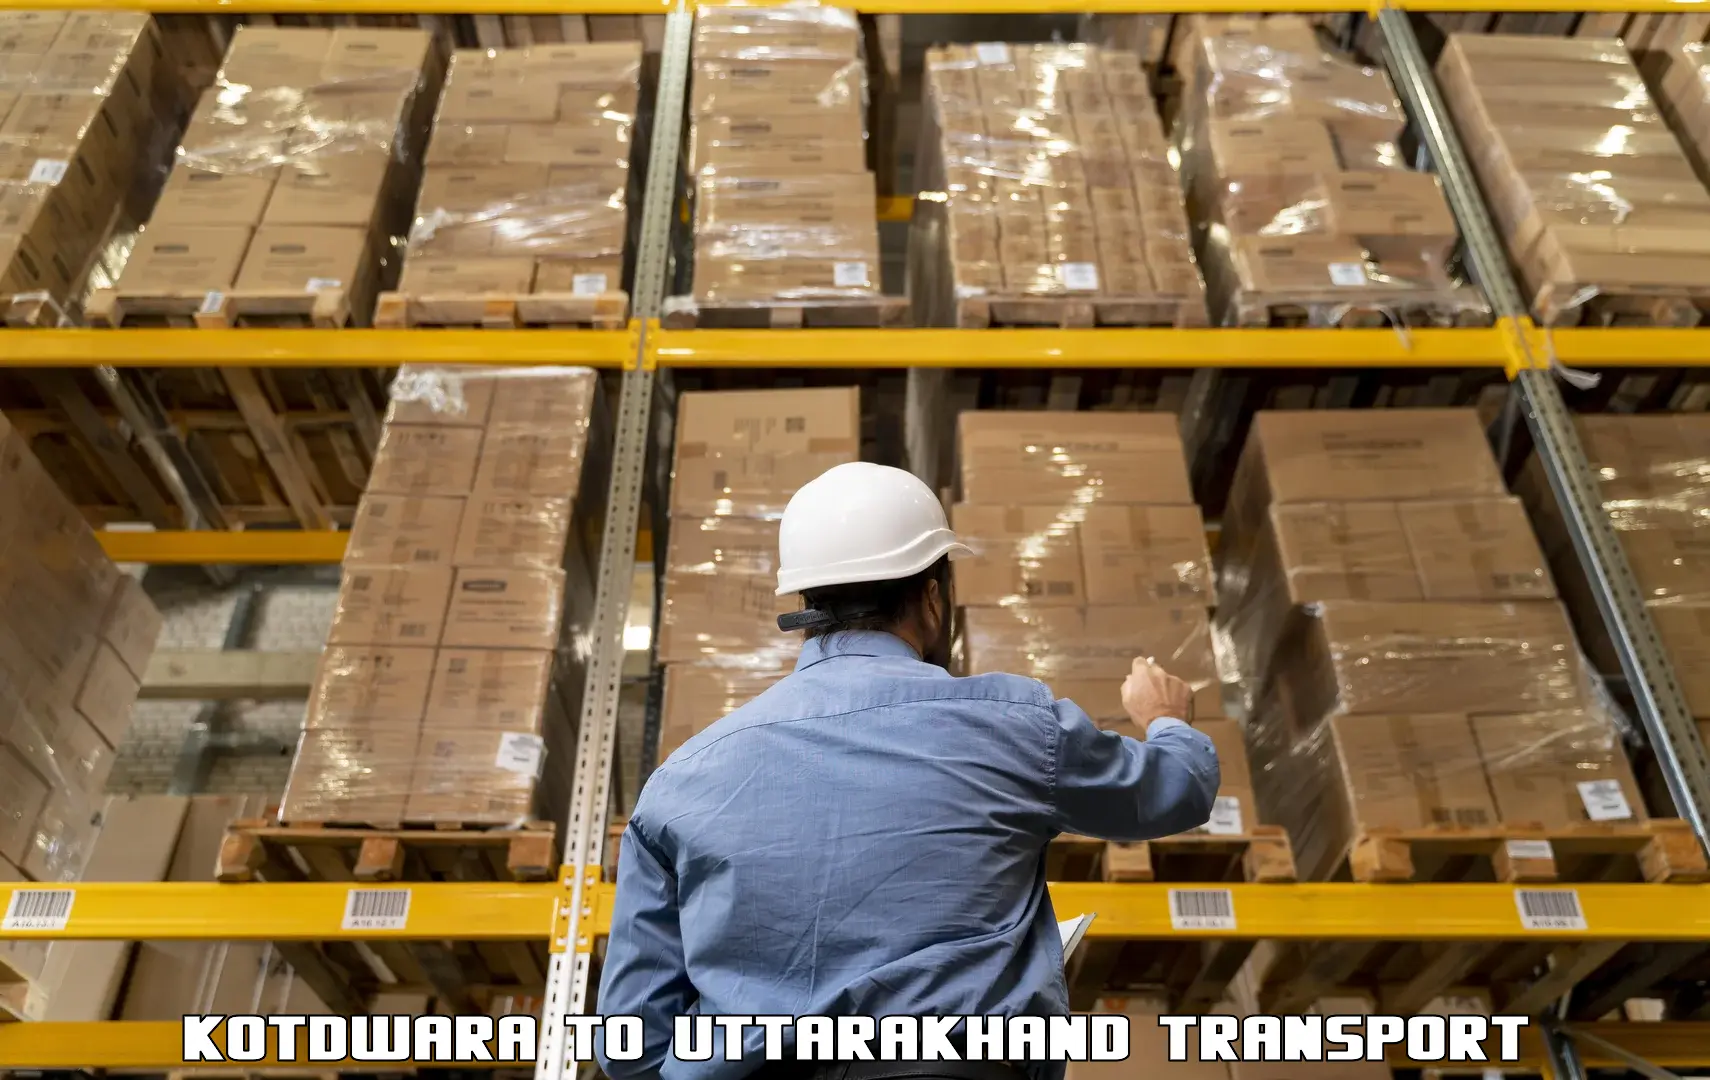 Package delivery services Kotdwara to Kotdwara